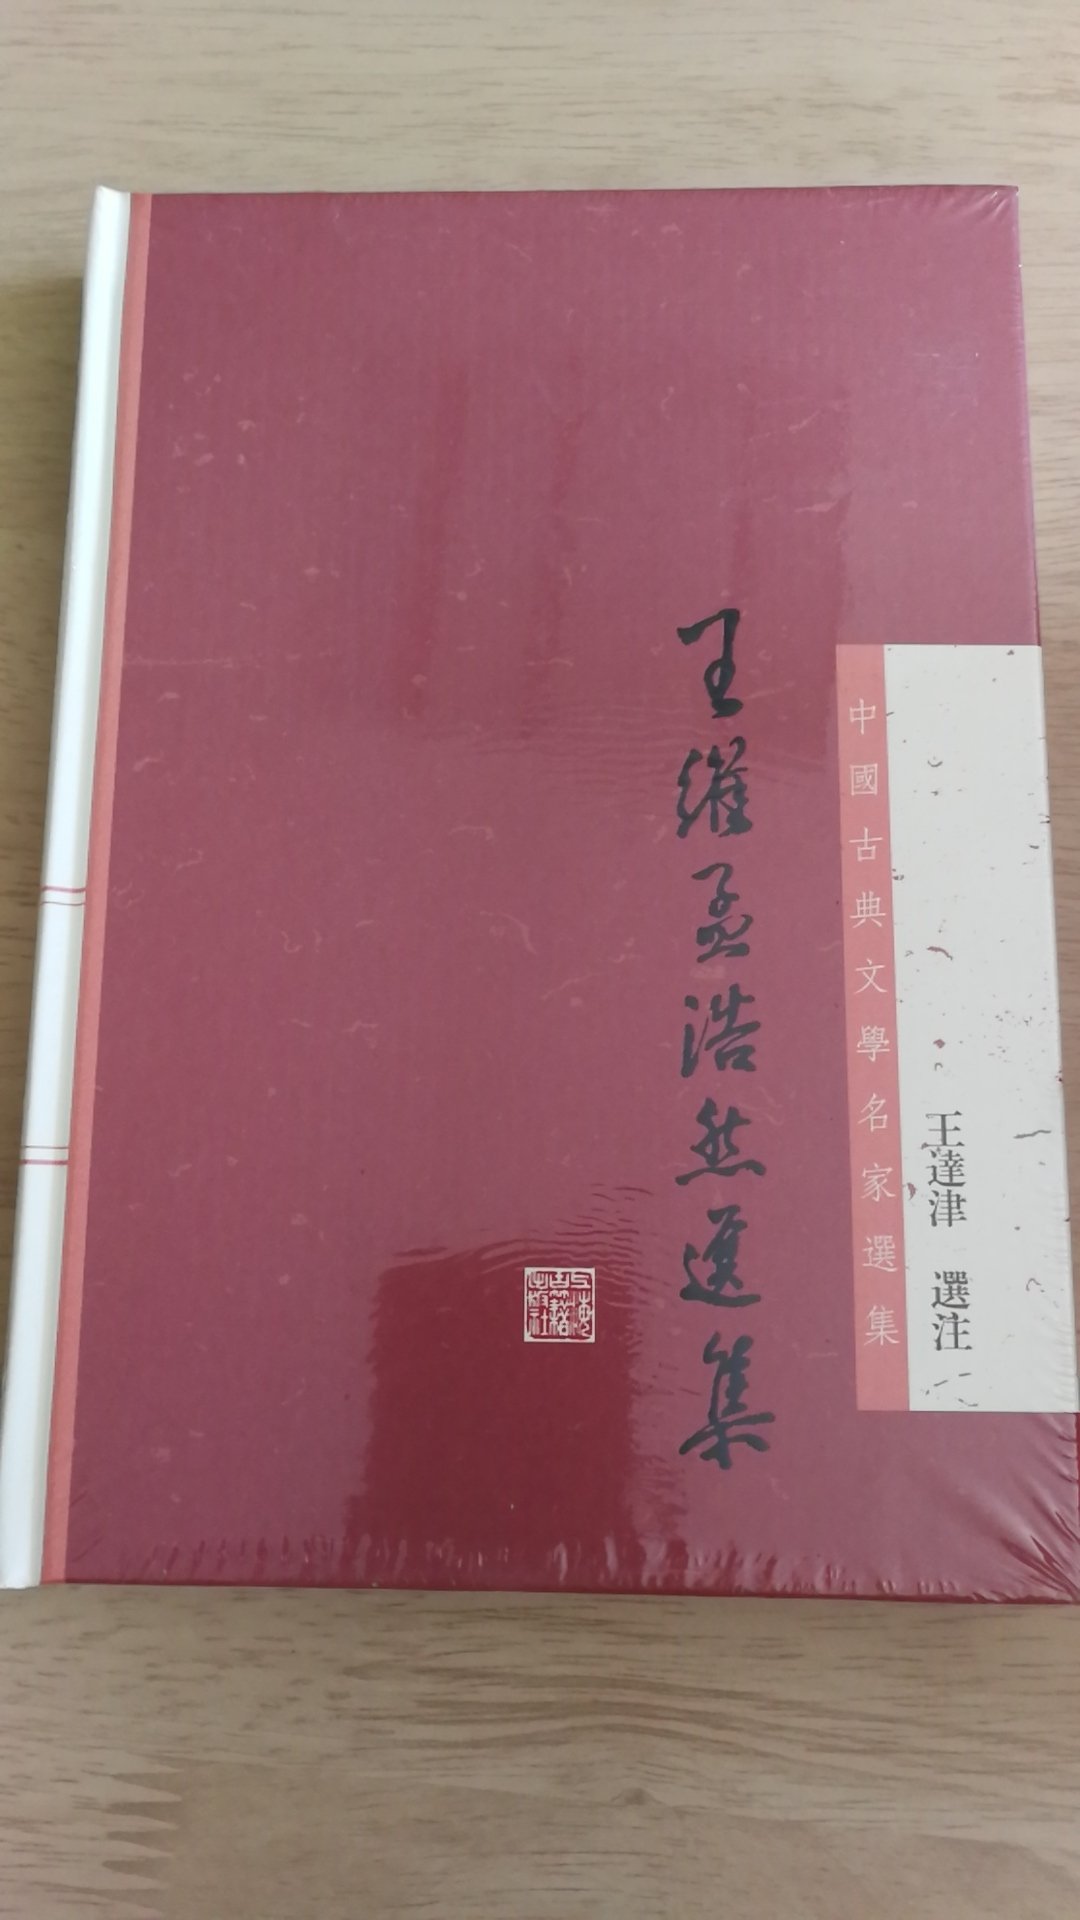 上海古籍出版社推出的中国古典文学名家选集，精装16开，书脊锁线纸质优良，排版印刷得体大方，活动期间价格实惠，送货速度快，非常满意。